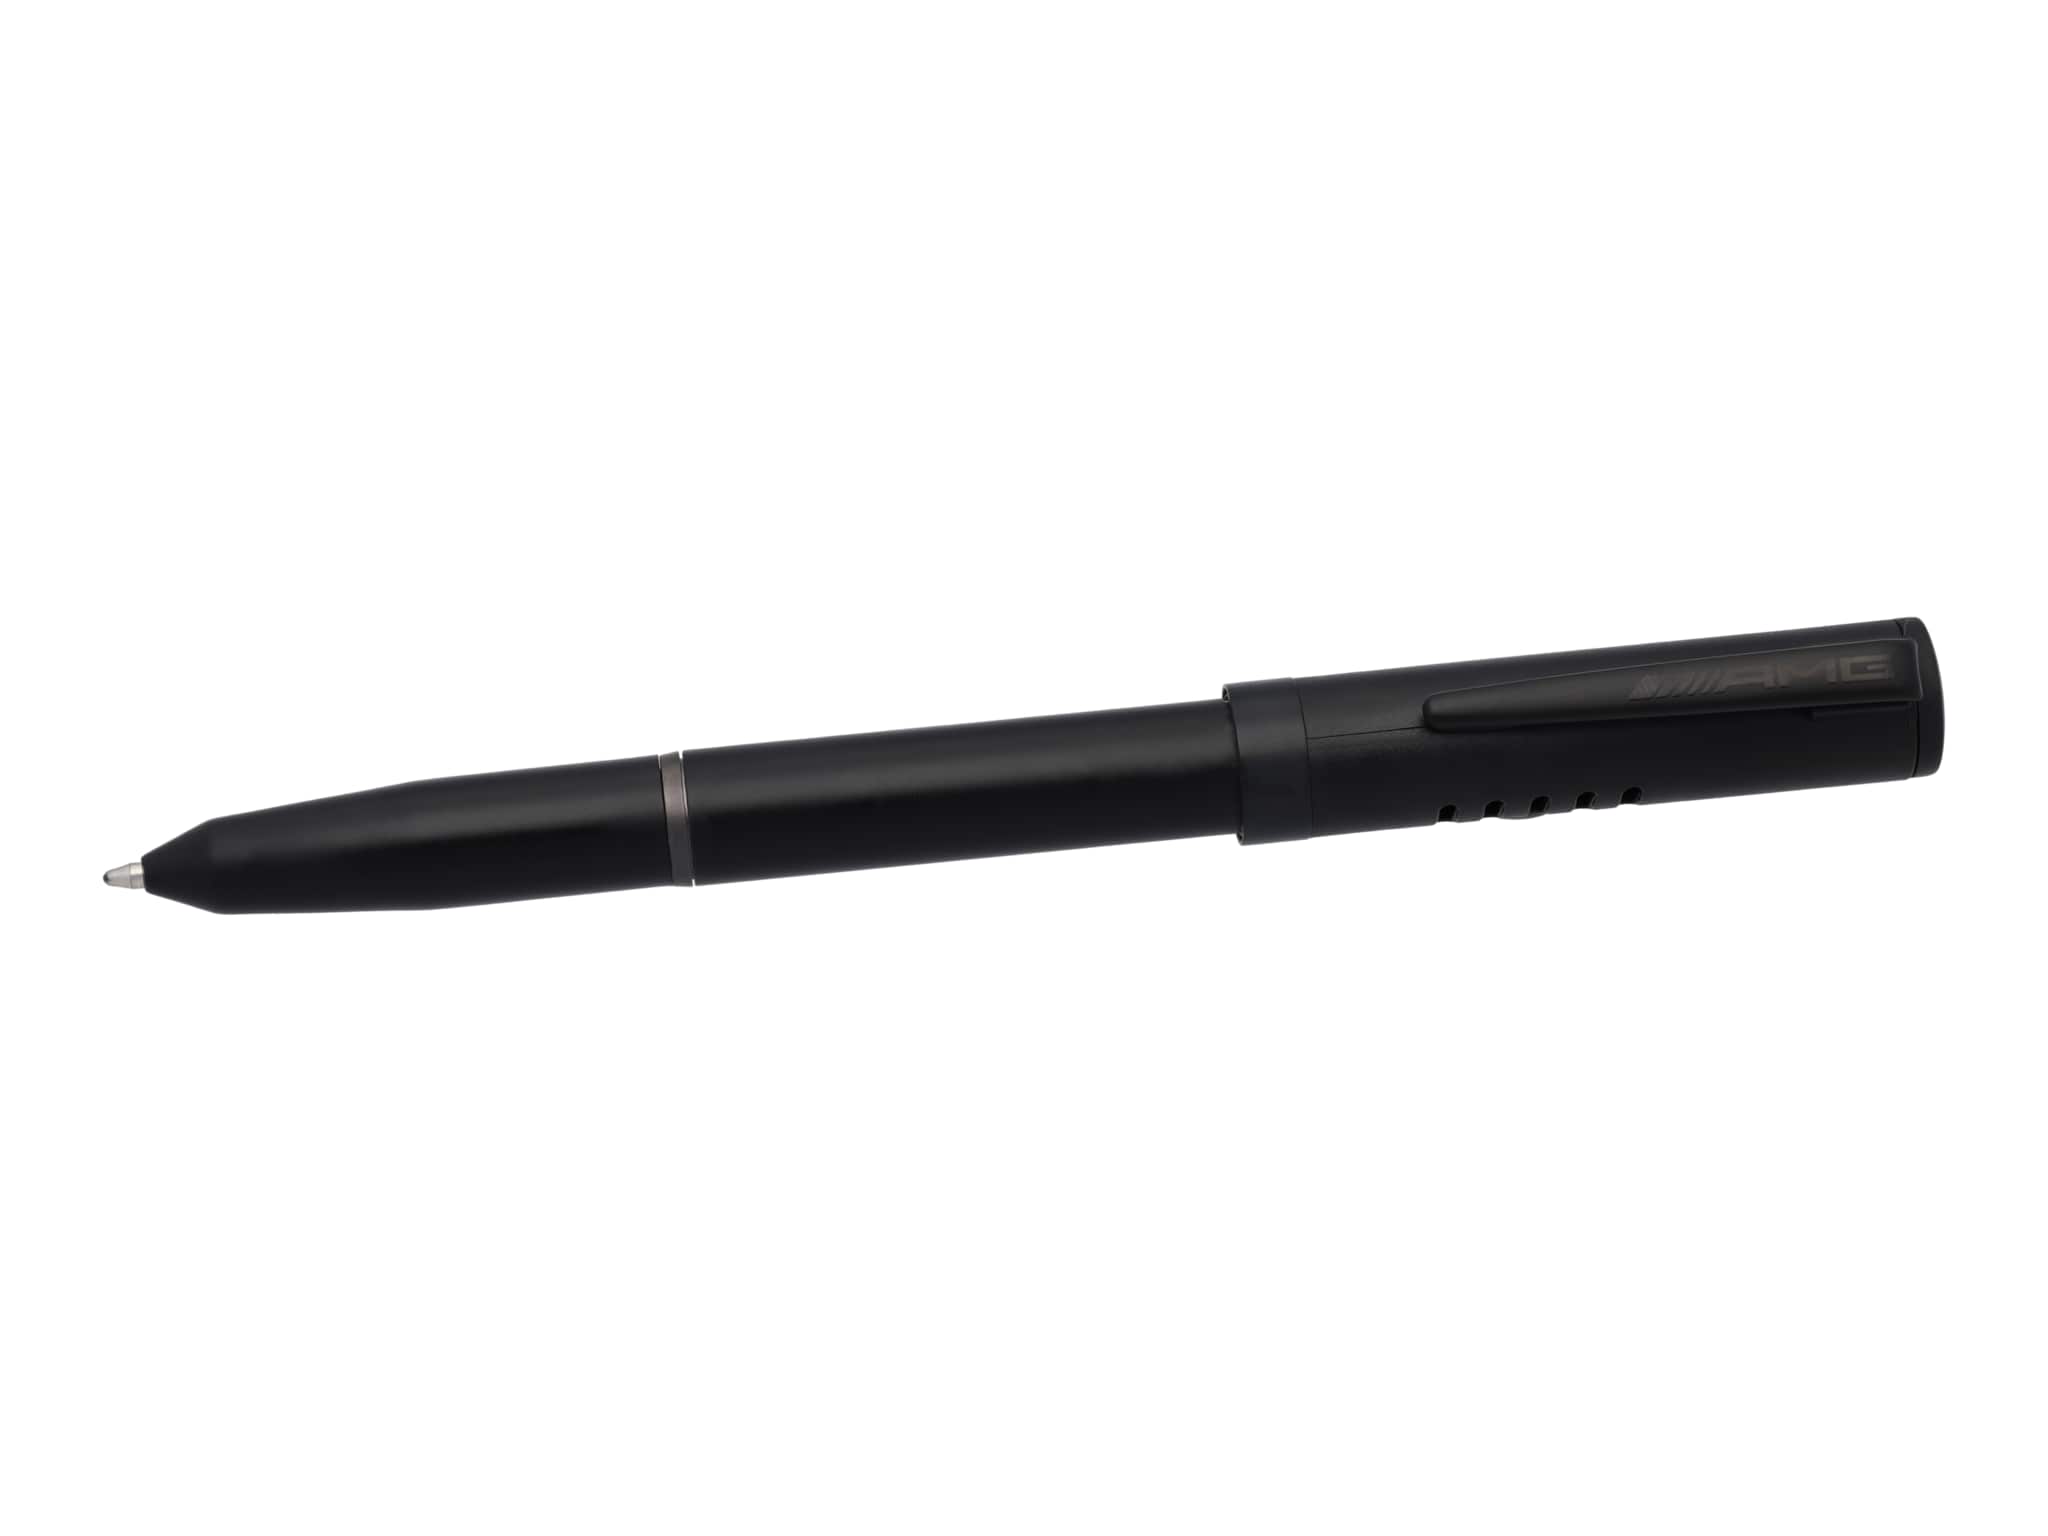 AMG Kugelschreiber, Sound - schwarz, Kunststoff